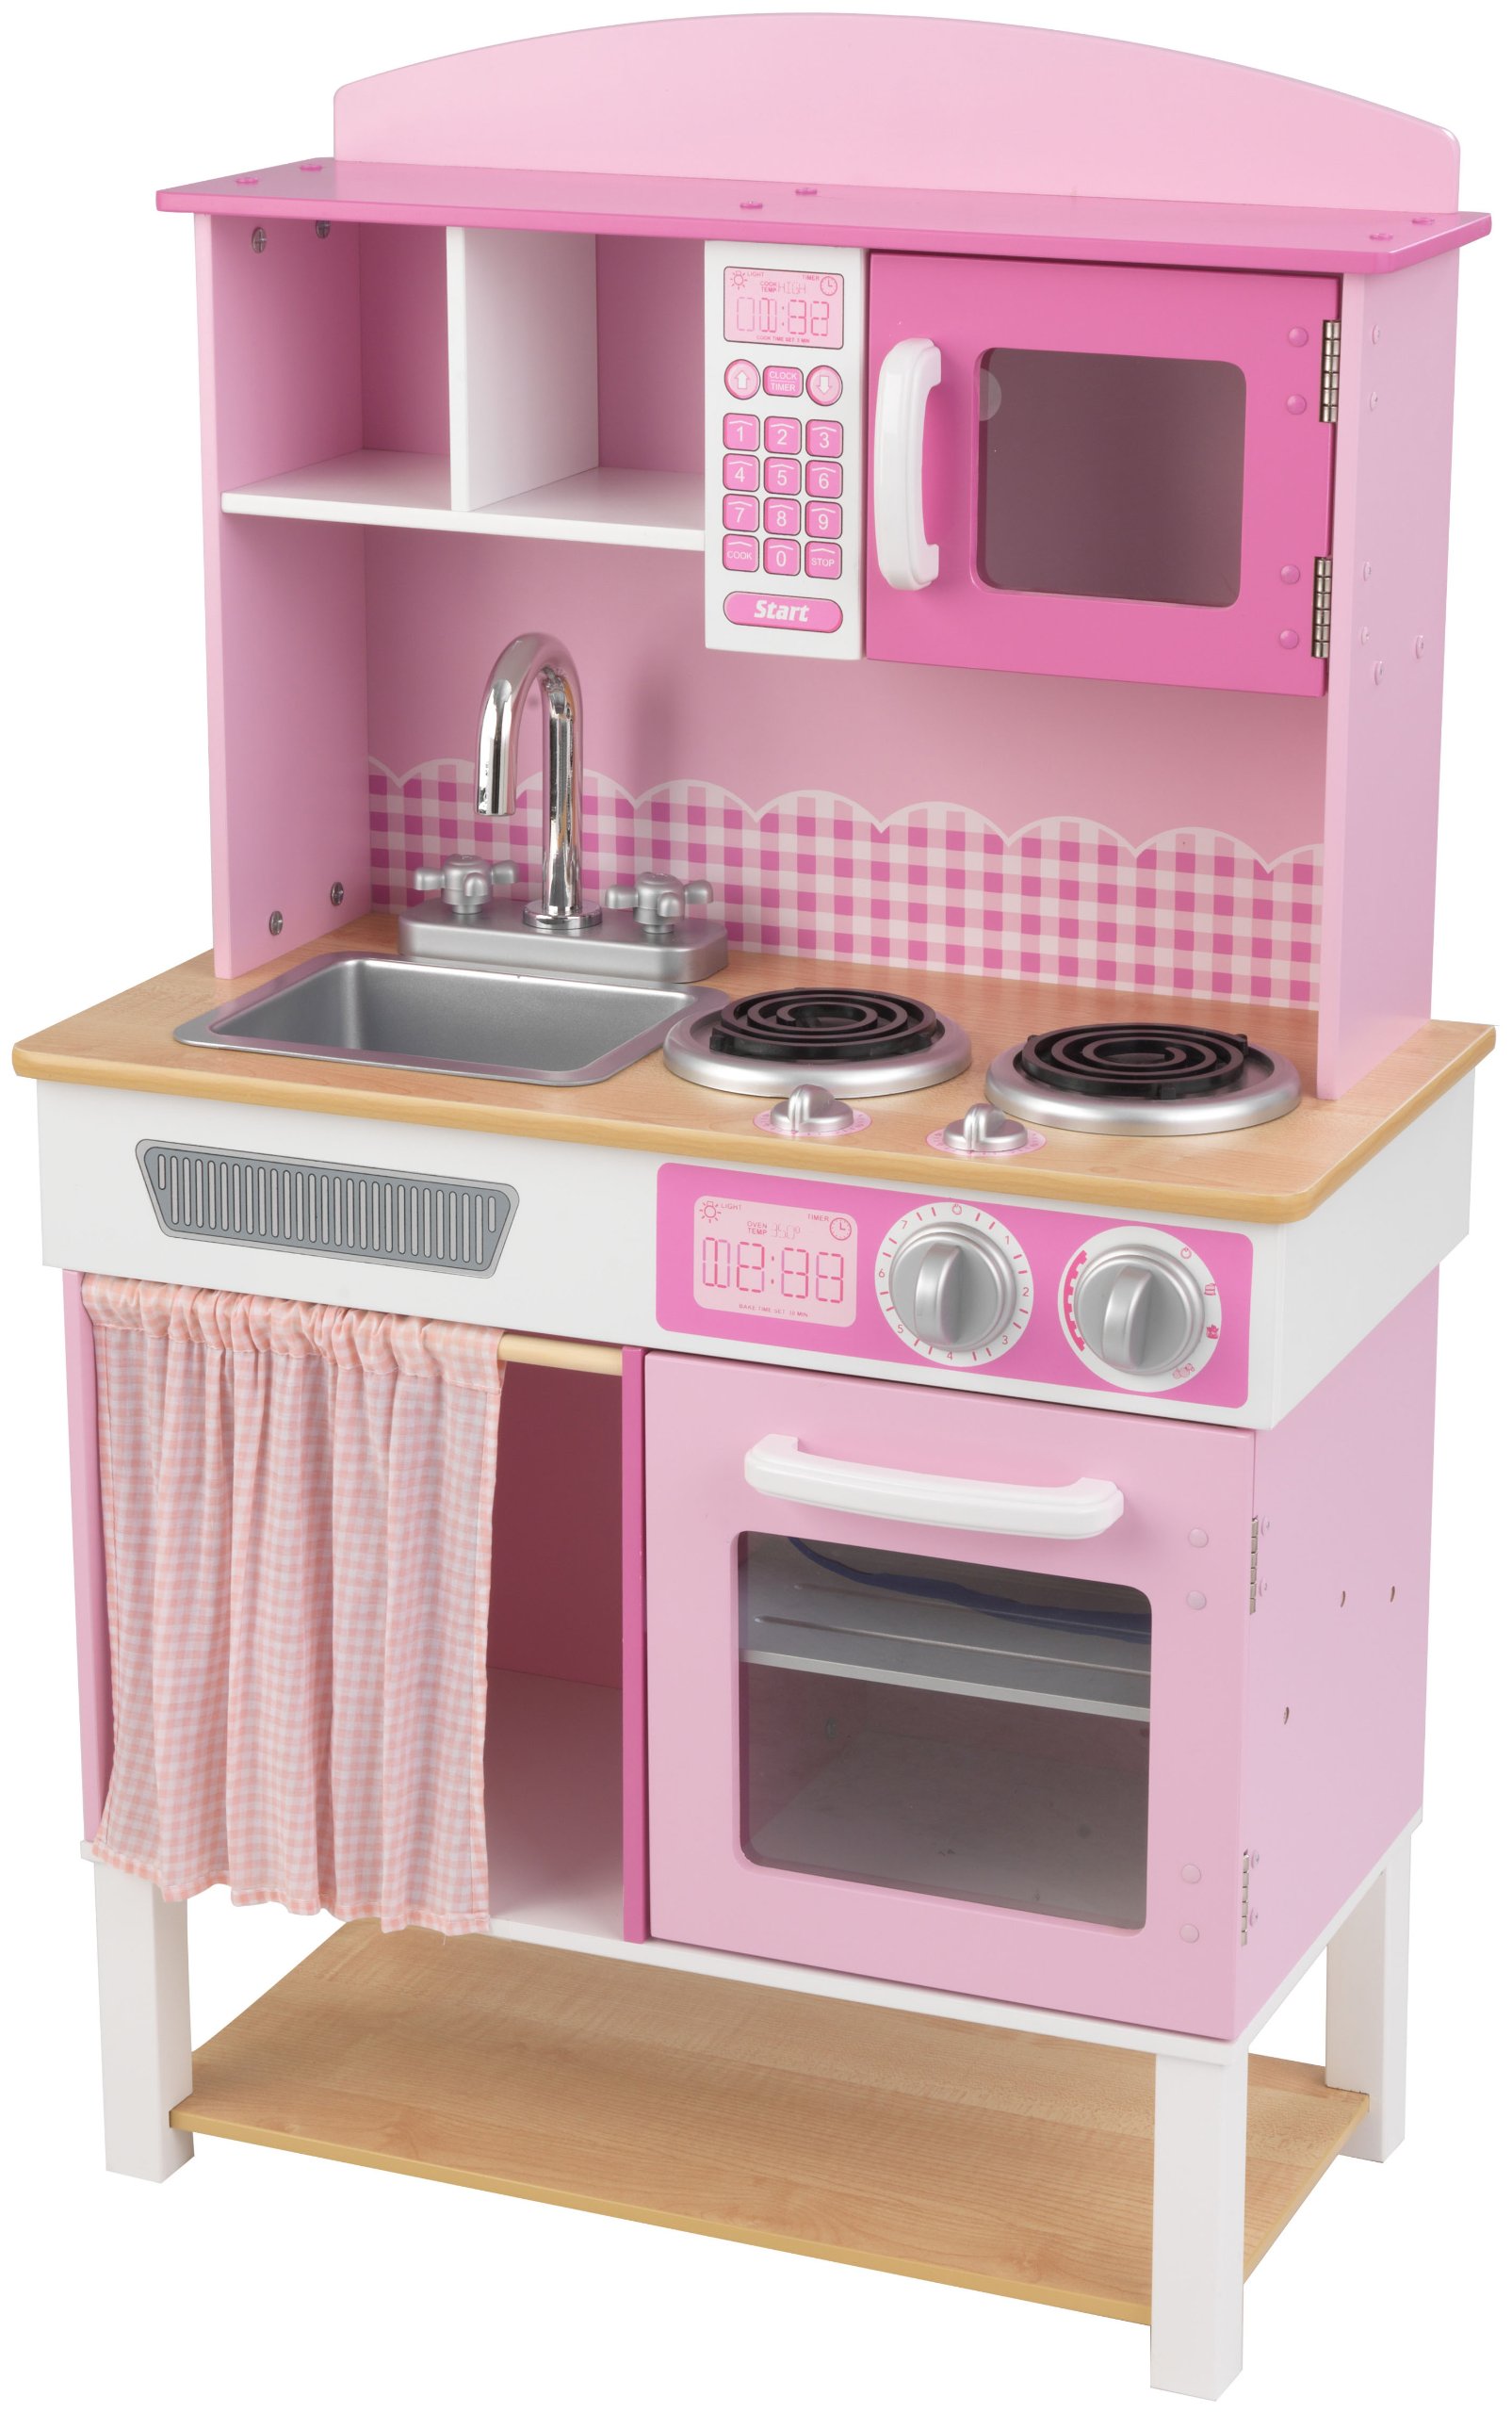 KidKraft Home Cookin' Kinderküche aus Holz, Spielküche mit Scheibengardine für Kinder, Spielzeug für Mädchen ab 3 Jahre, 53198